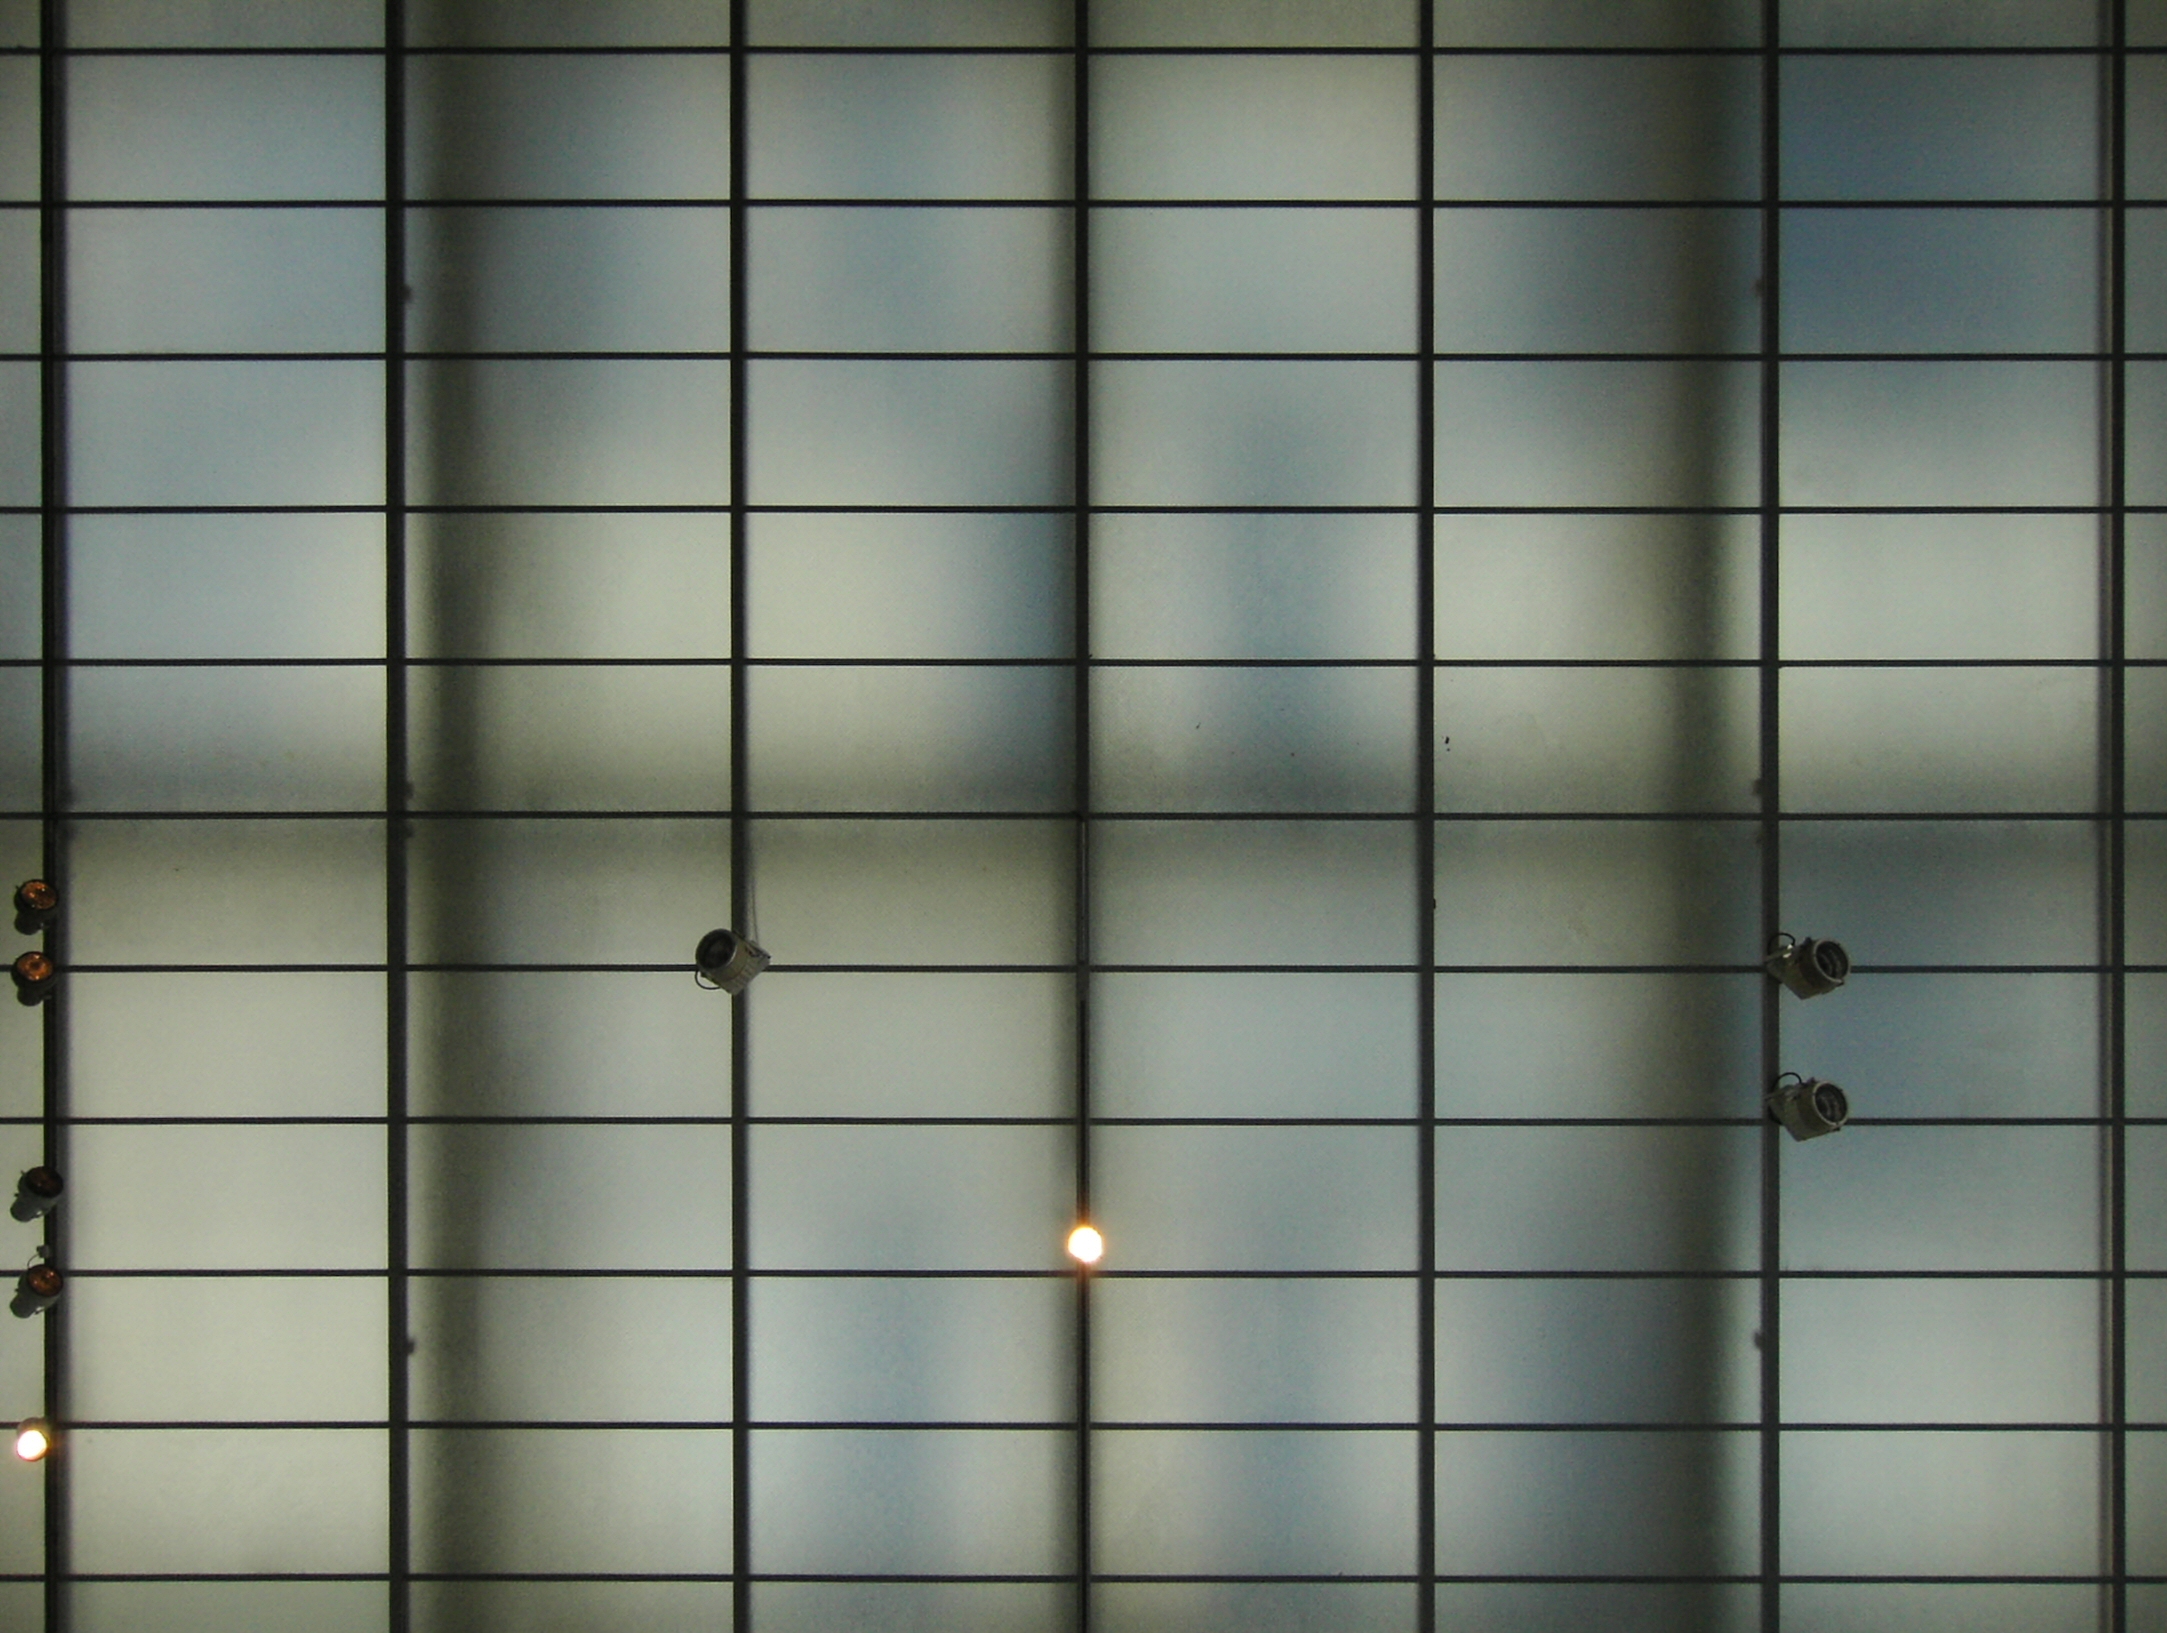 Le verre dépoli est un matériau translucide : il diffuse une partie de la lumière. © hobvias sudoneighm, Flickr